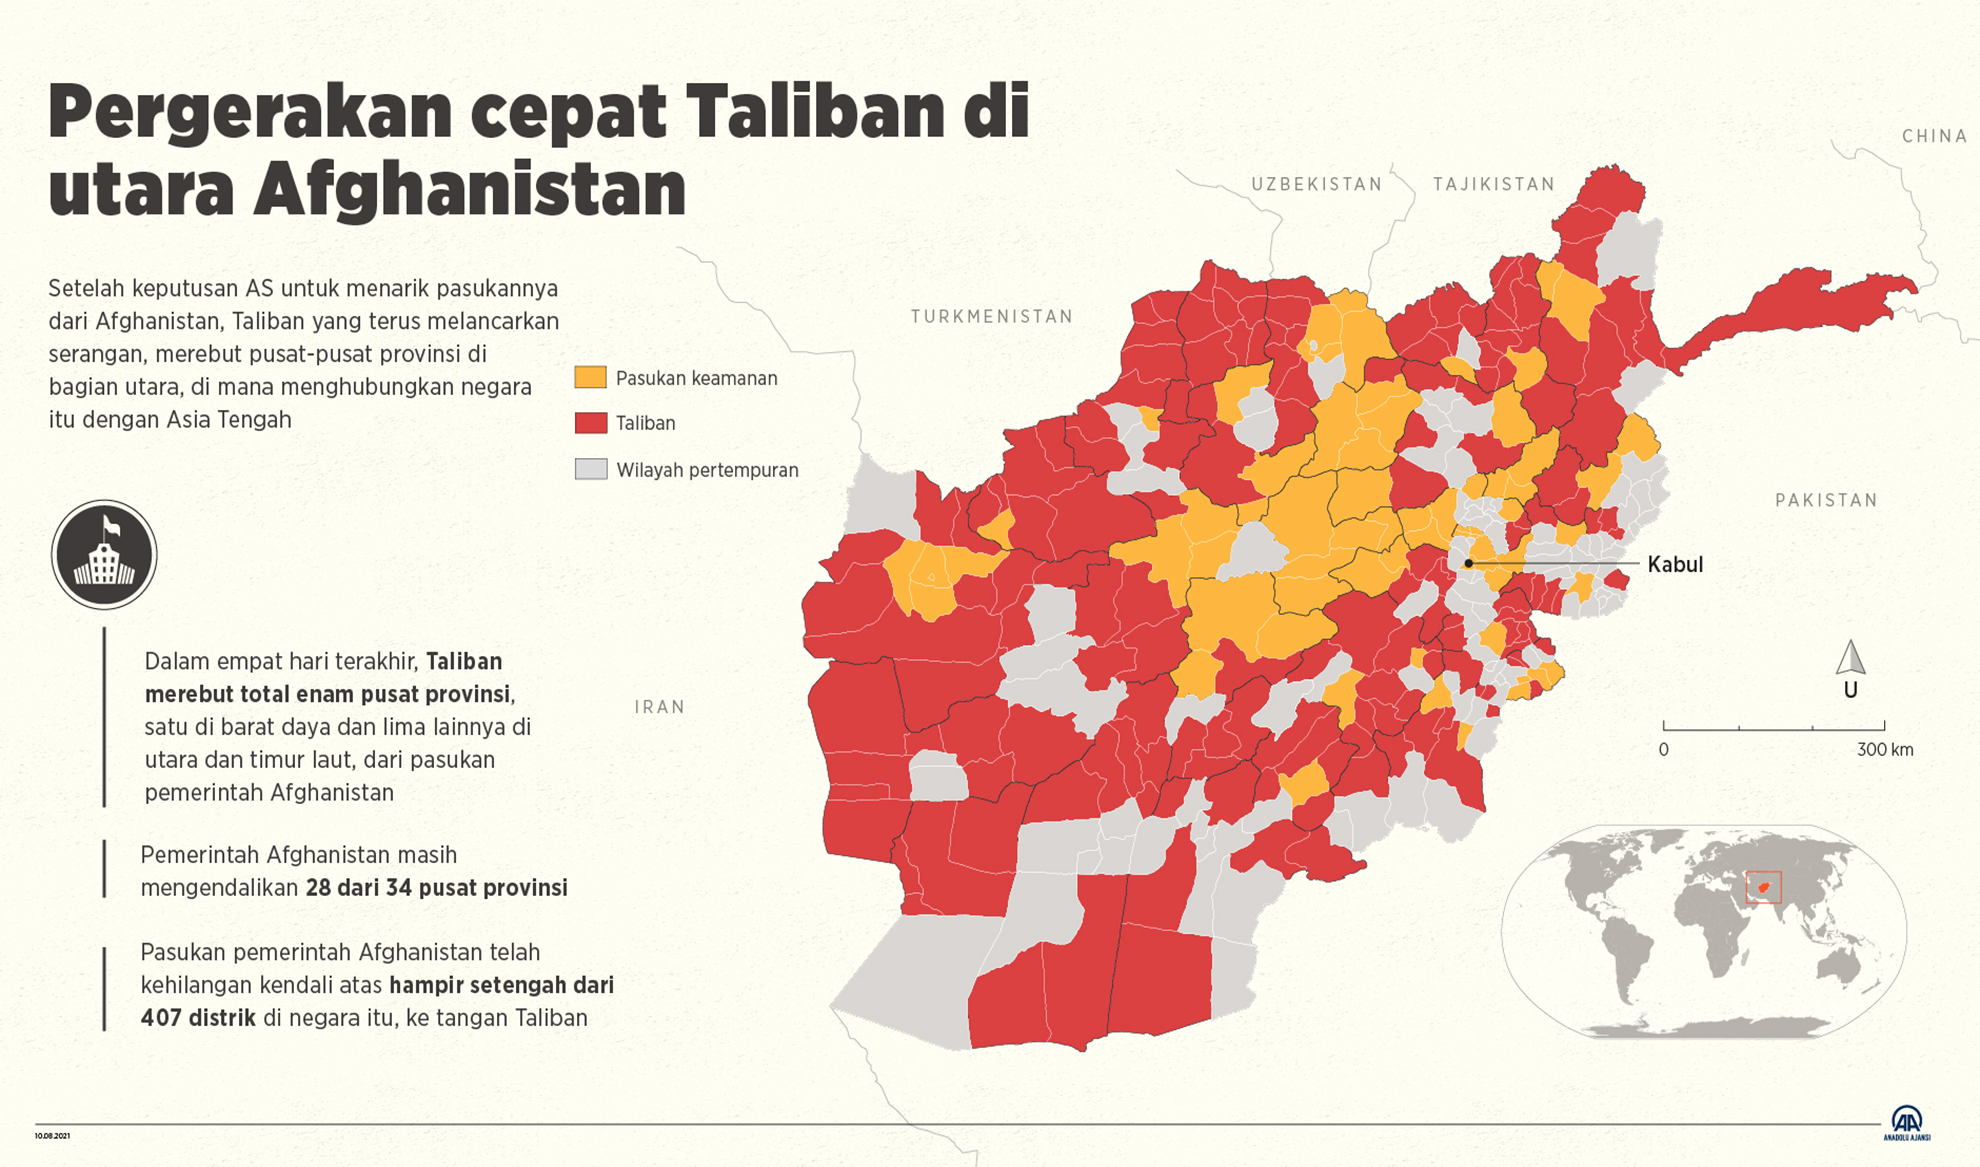 Pergerakan cepat Taliban di utara Afghanistan 